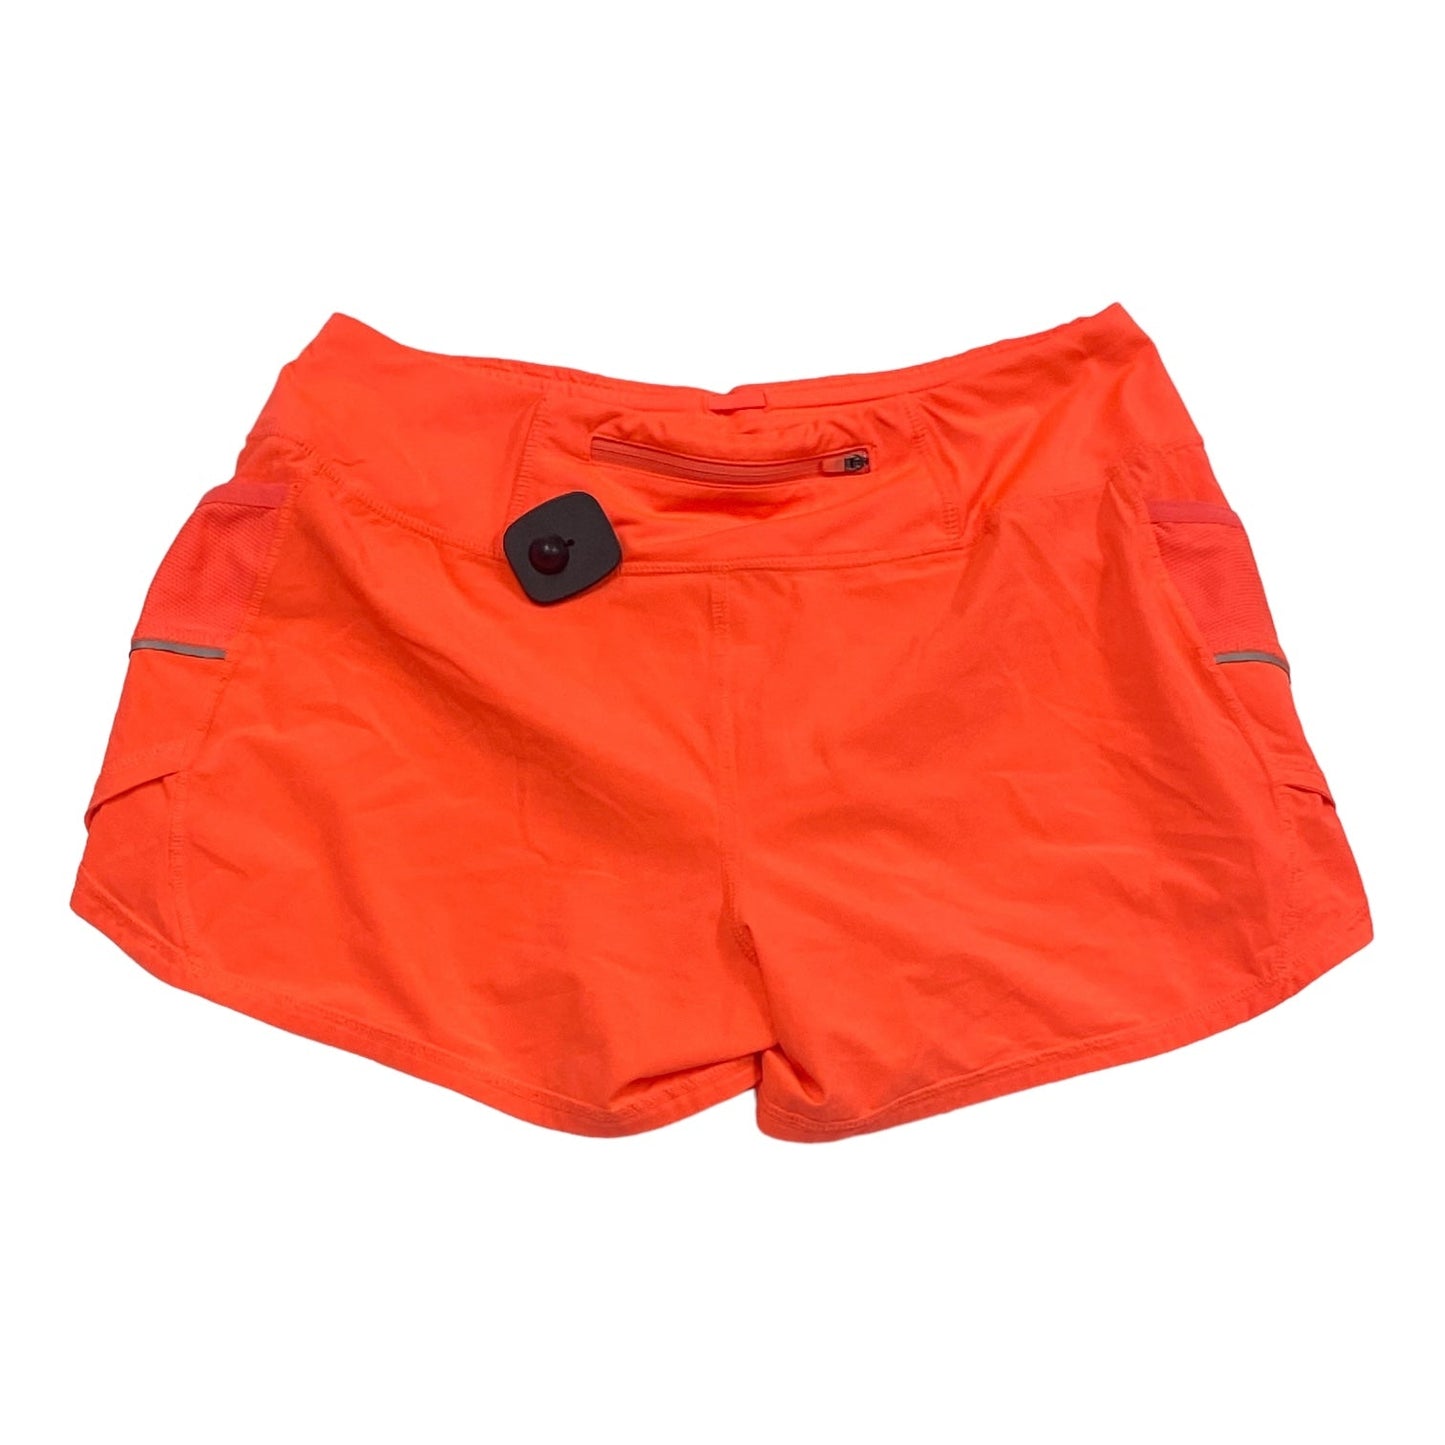 Orange Athletic Shorts Athleta, Size M